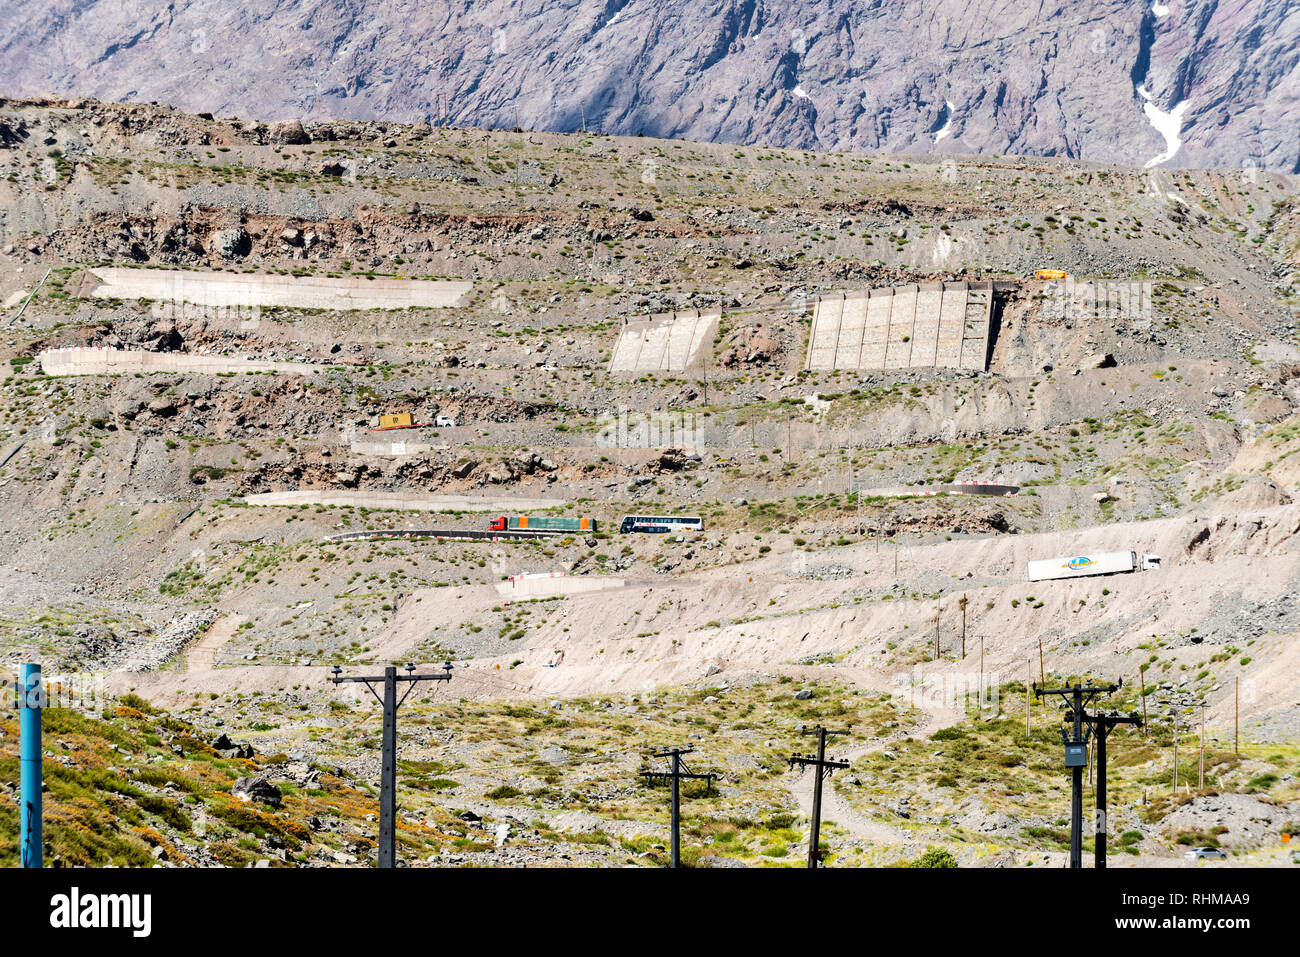 L'Argentine et d'autre de la frontière avec le Chili a environ 30 virages en épingle ou courbes de retournement sur la Route 60 l'ascension de la montagne à Los Caracoles. Banque D'Images